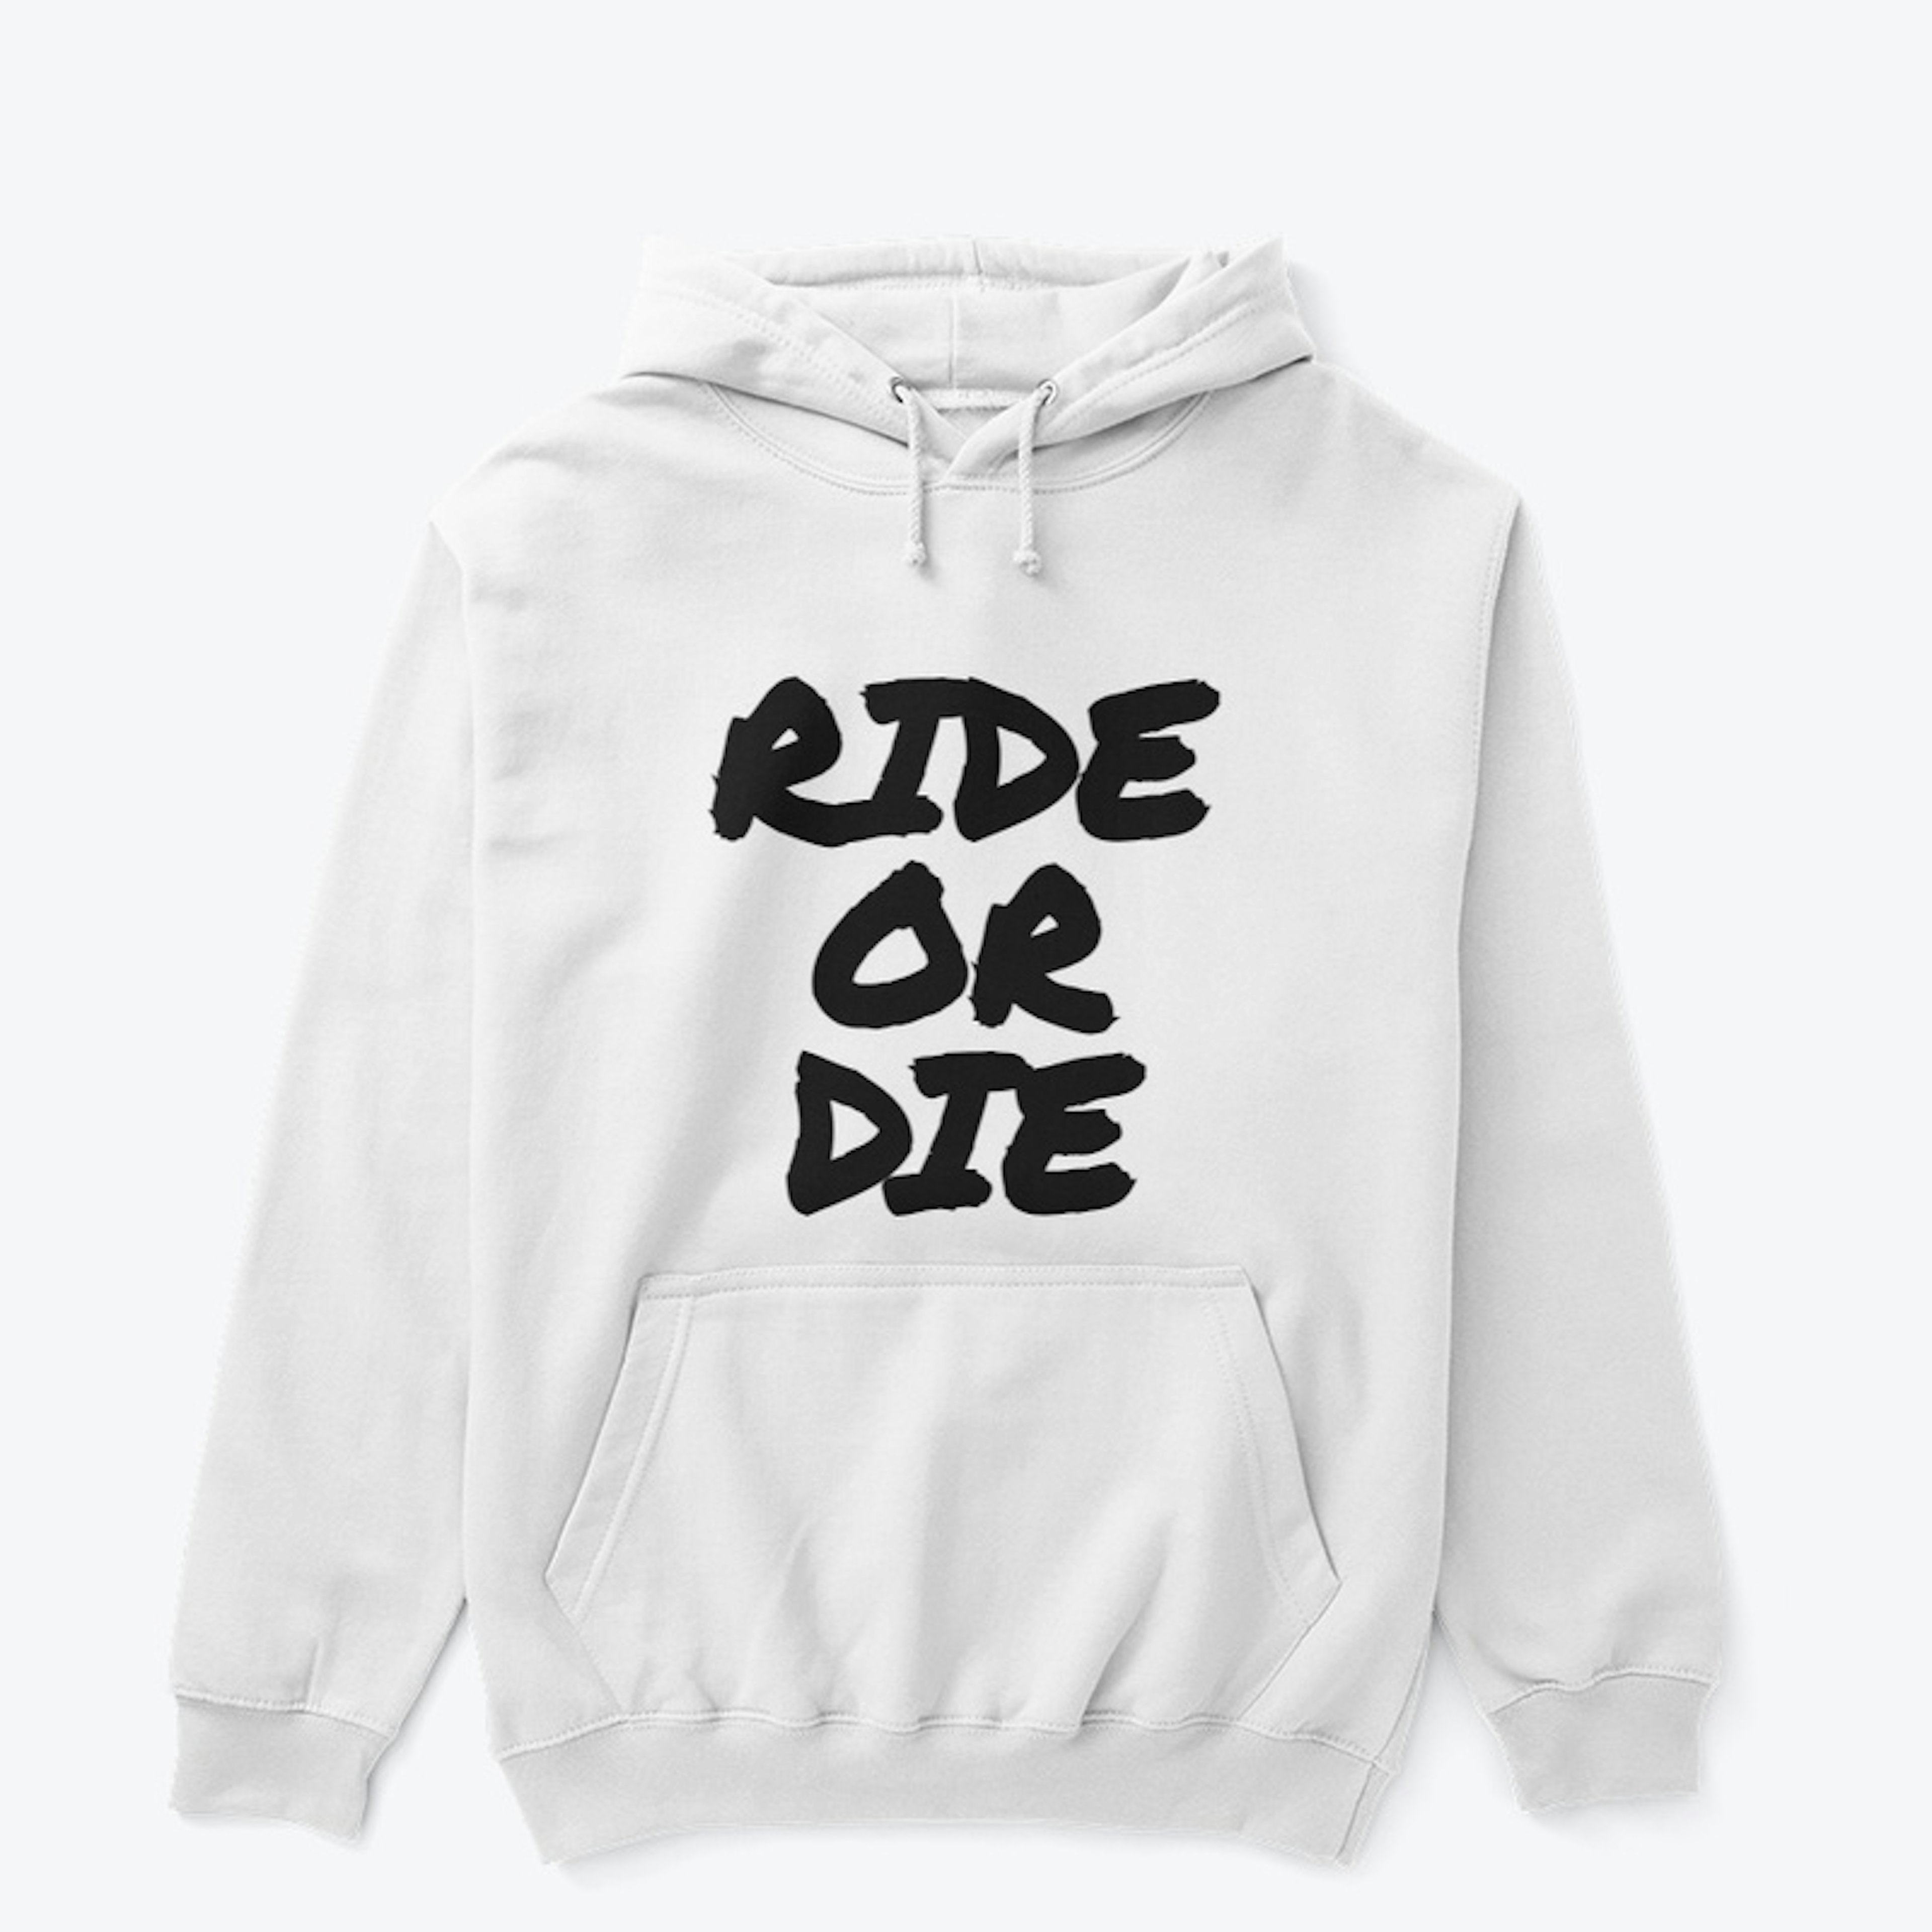 Ride or Die Hoodie